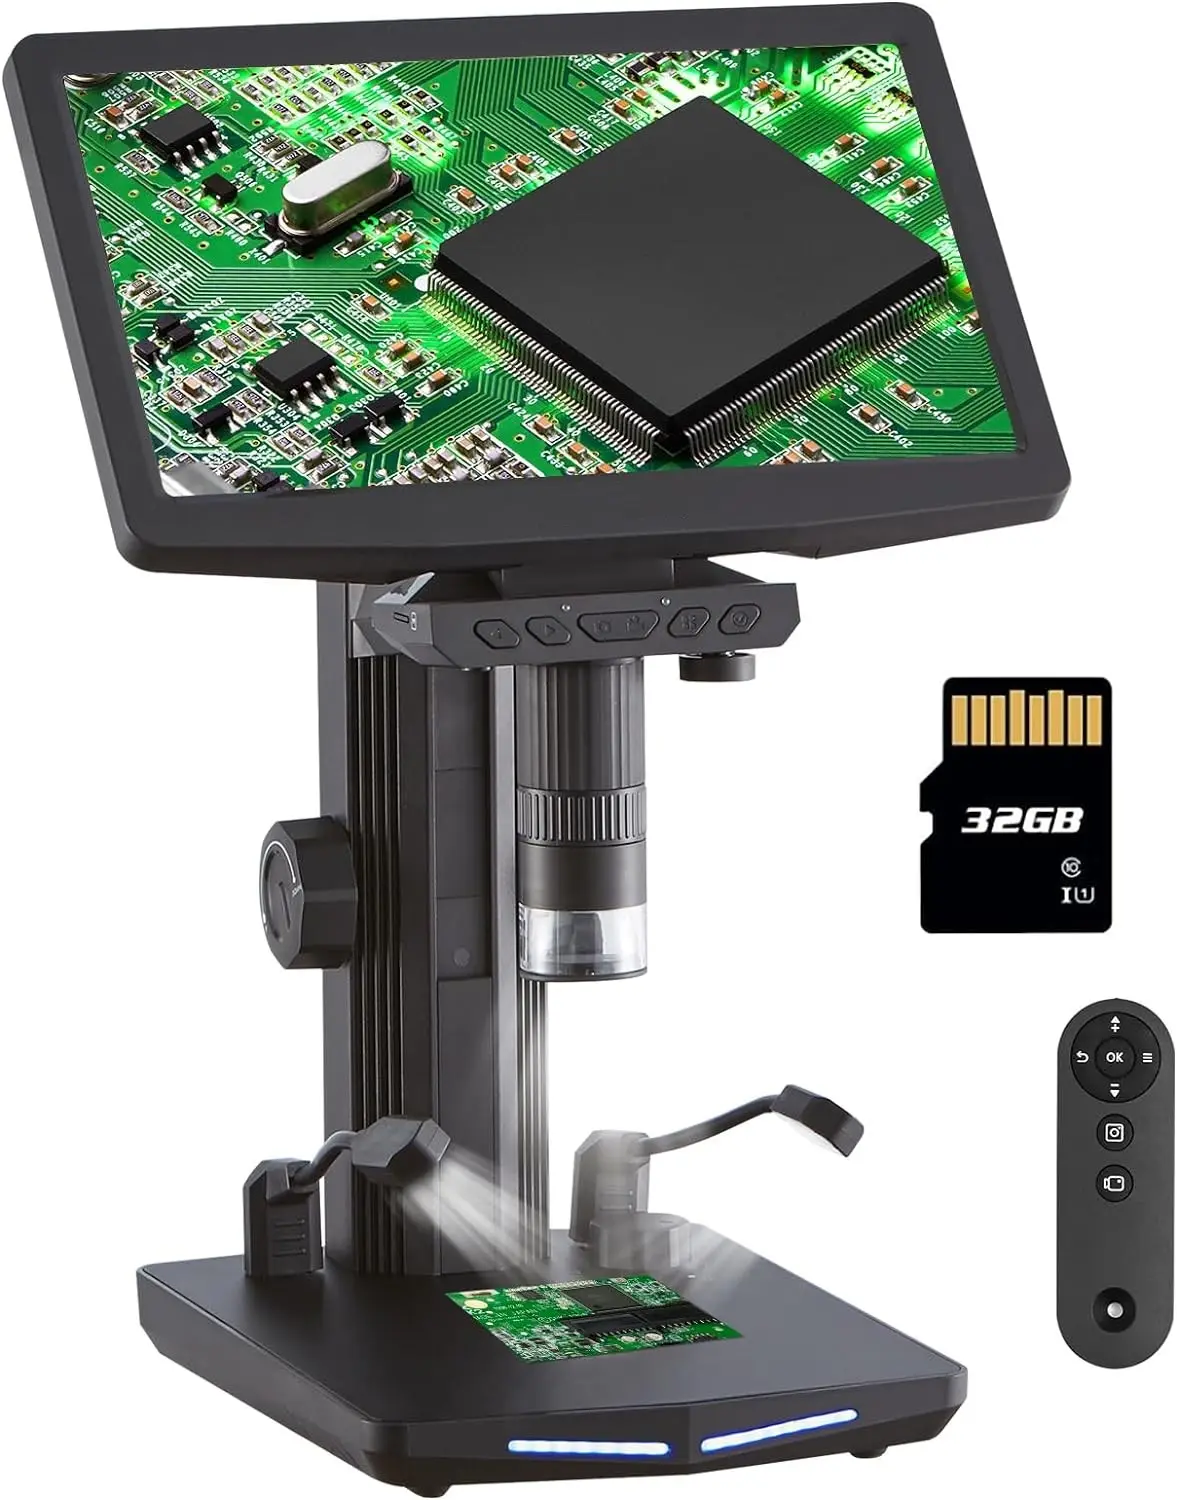 10.1 인치 IPS 스크린 디지털 현미경 10X-1300X 배율 1080P 동전 현미경, 10 개의 LED 조명이 있는 전자 현미경